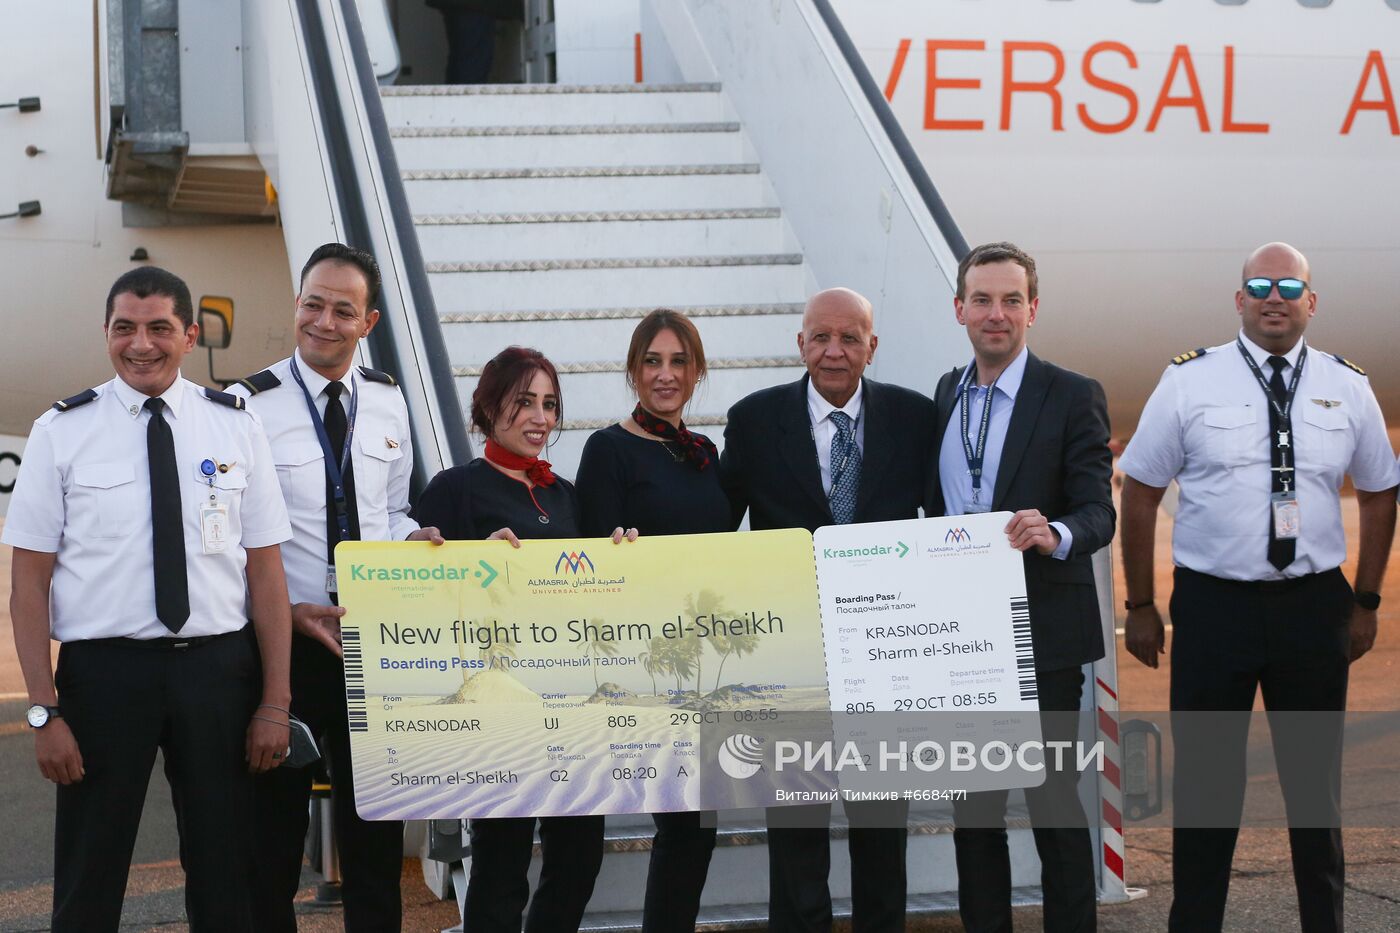 Встреча первого рейса авиакомпании Almasria Universal Airlines из Шарм-эль-Шейха в Краснодаре